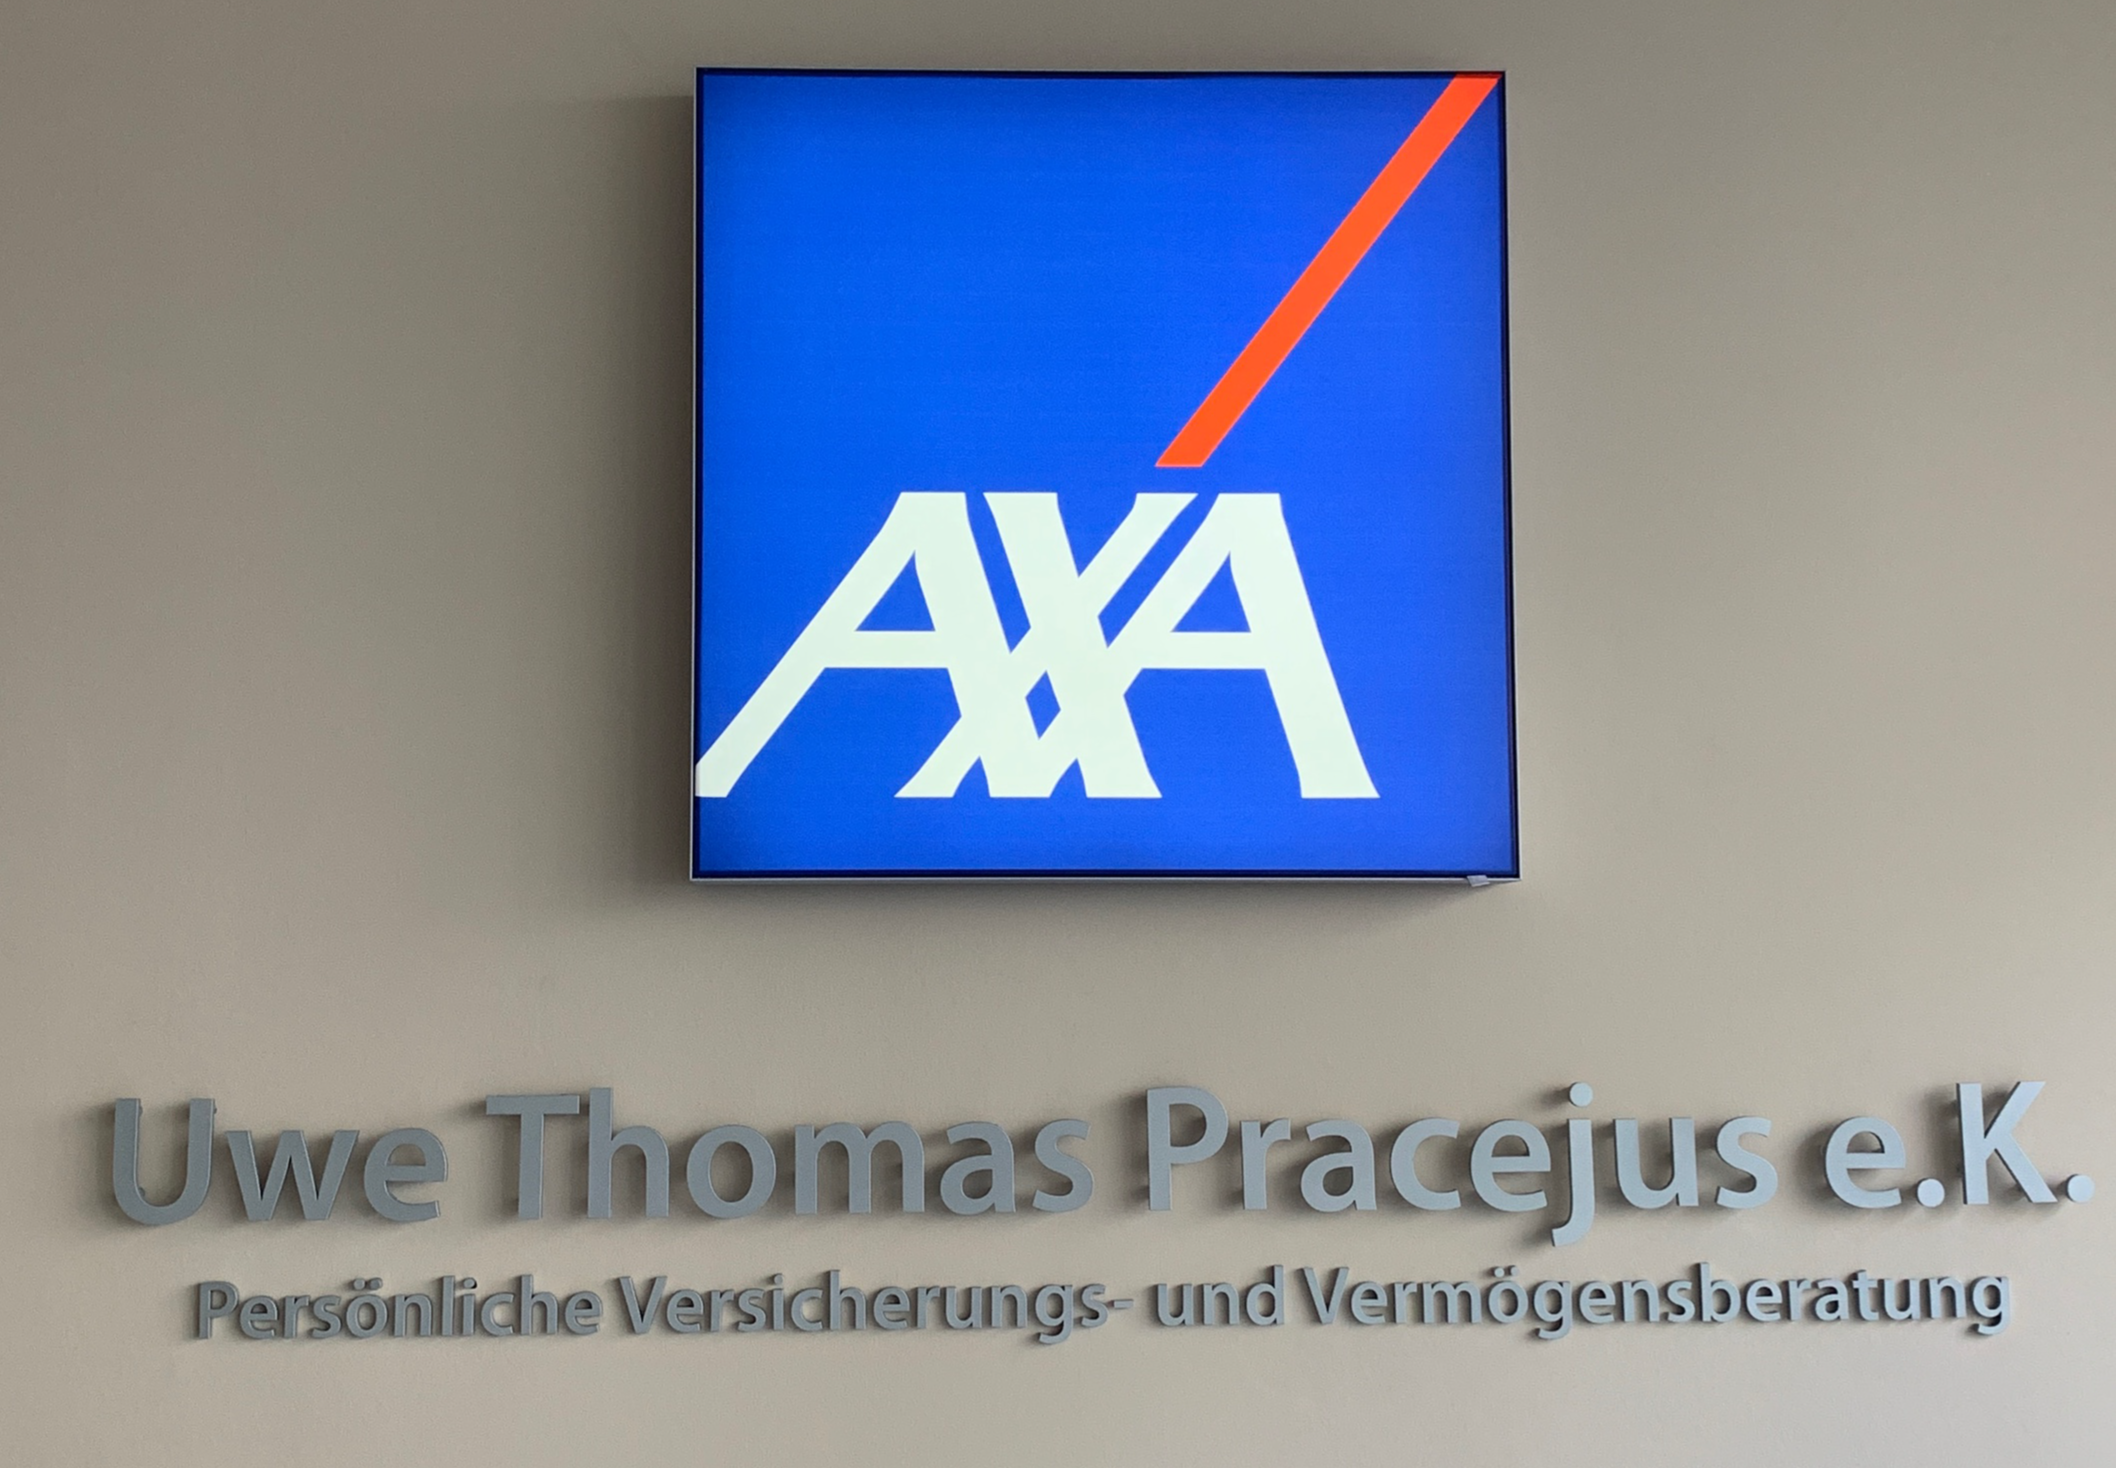 Ihre AXA Regionalvertretung
Uwe Thomas Pracejus e. K.
Ihre KFZ Versicherung in Düsseldorf für E Autos